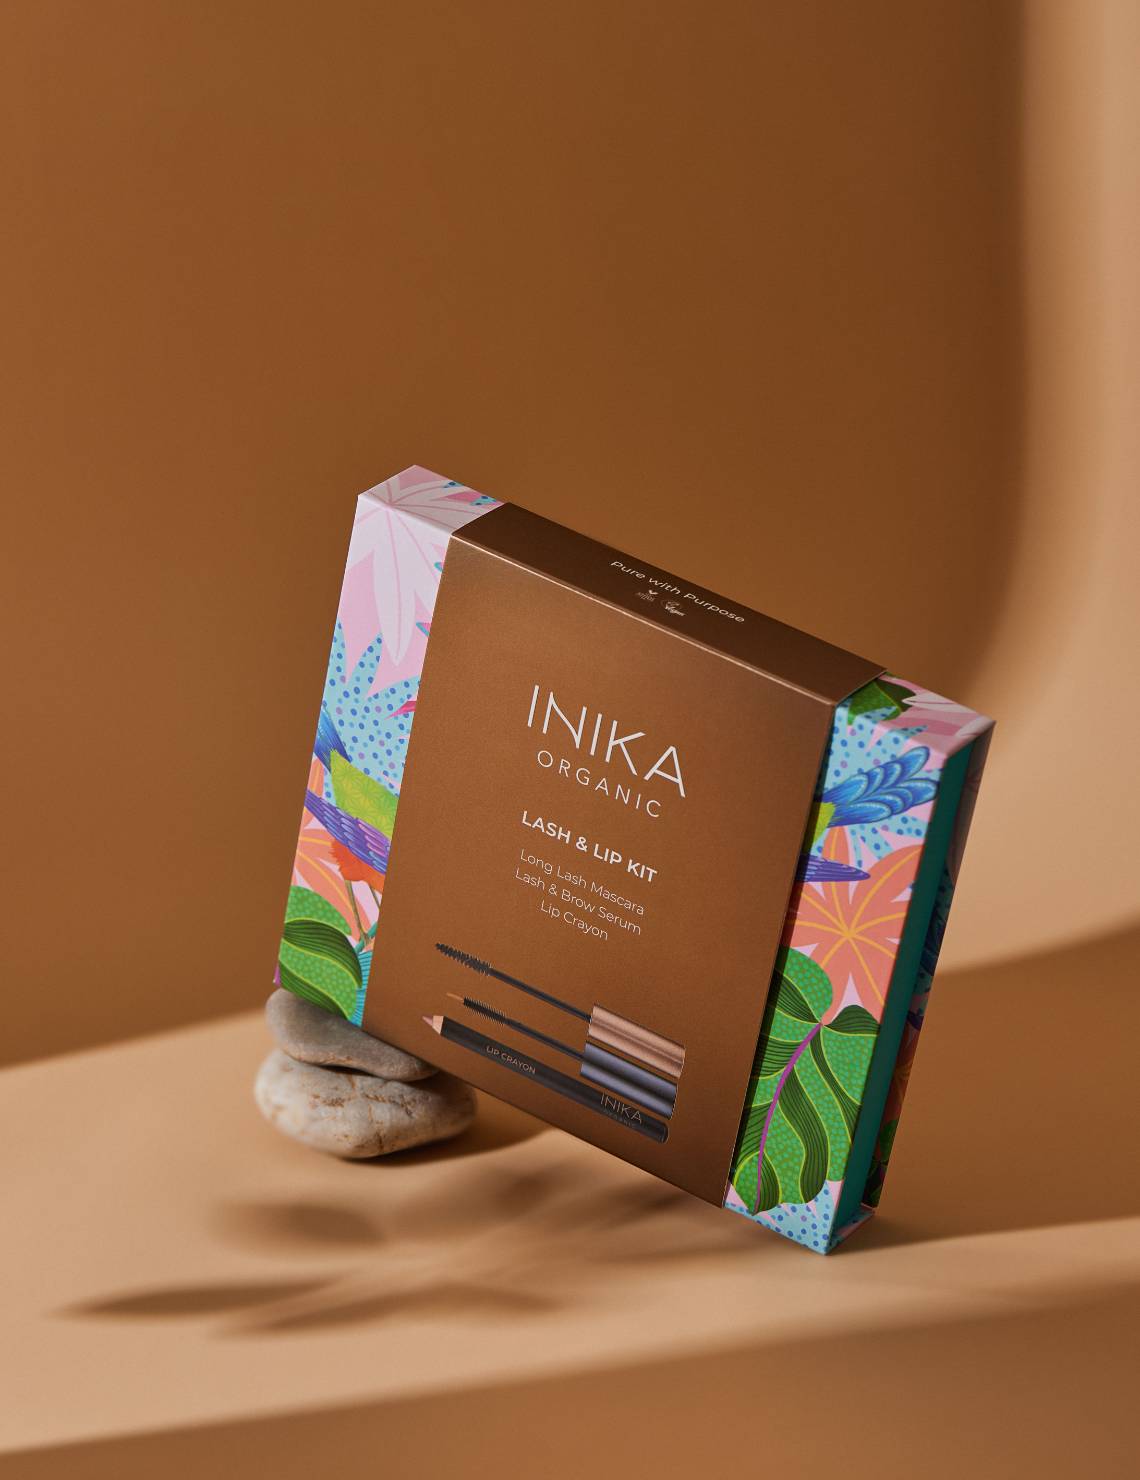 INIKA Organic Lash & Lip Kit